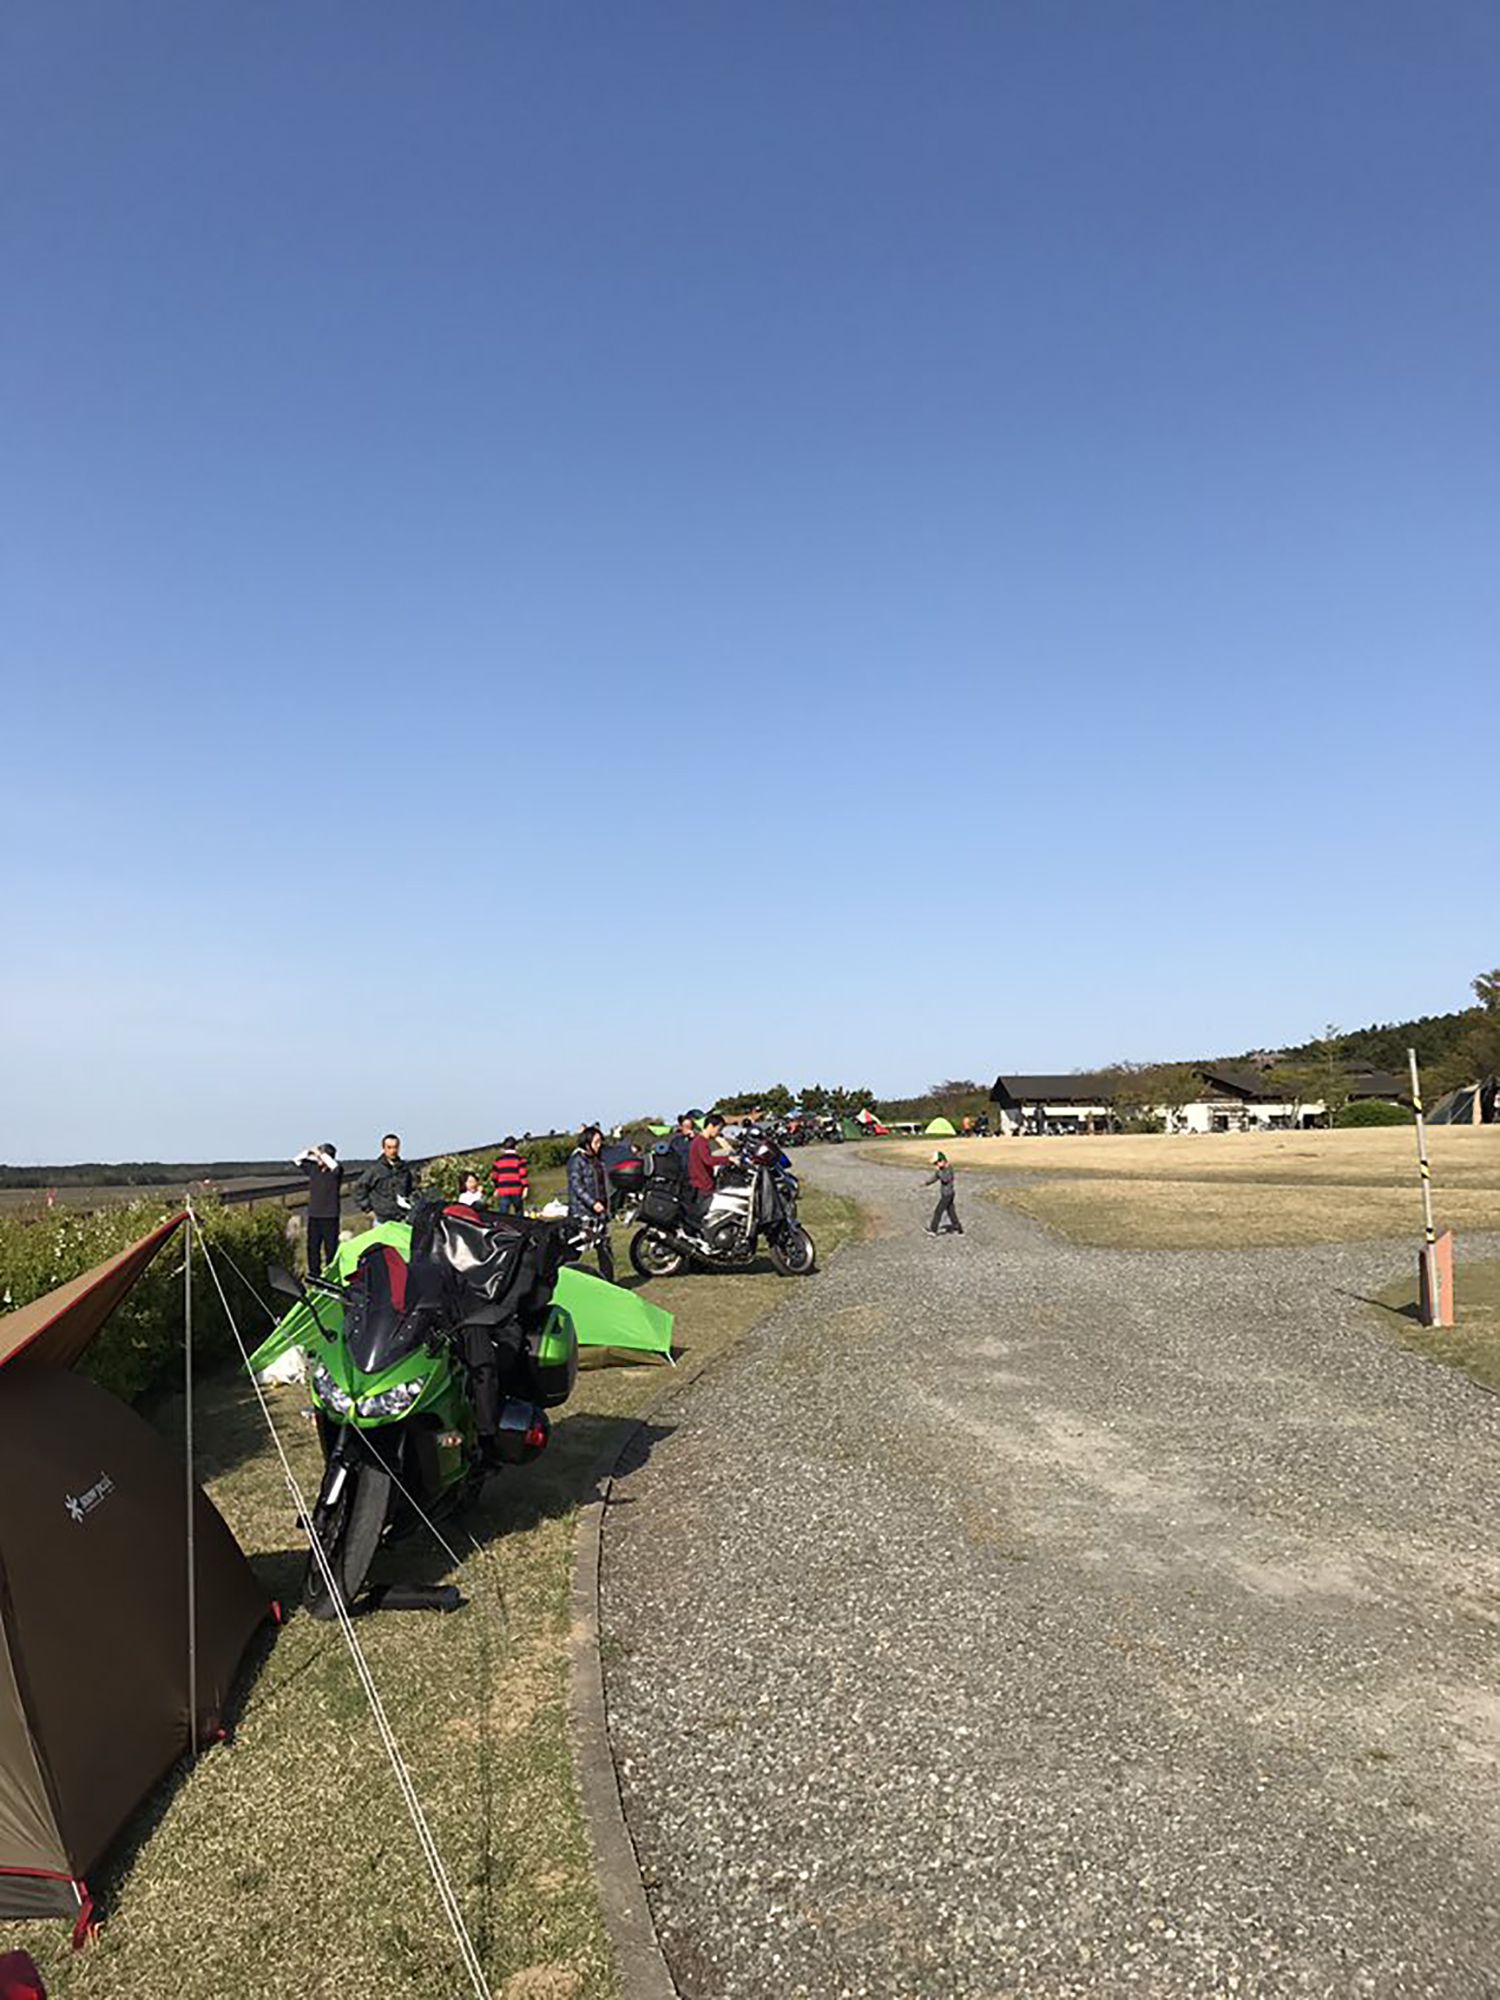 日本一周ライダー キャンプ好きライダーが選ぶ 全国おすすめキャンプ場 Enjoycamptouring 中古バイク情報はbbb